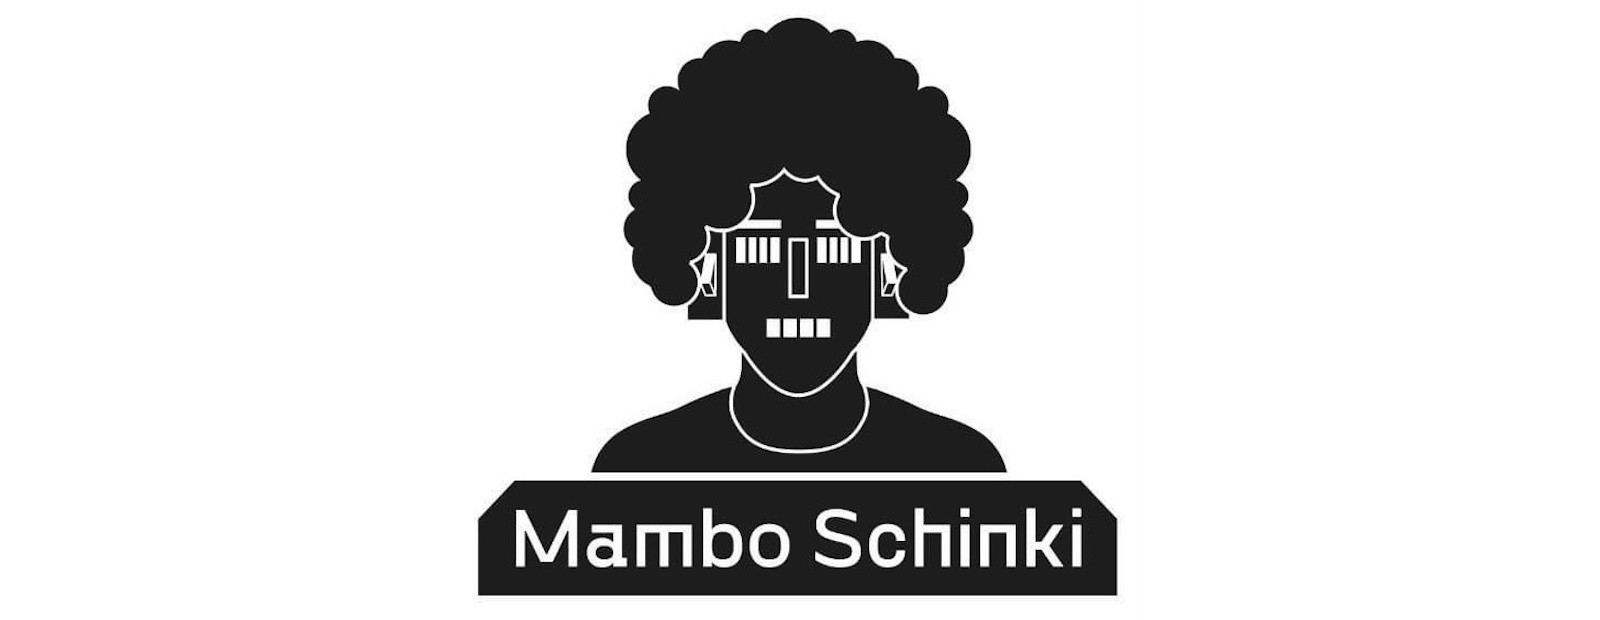 Mambo Schinki